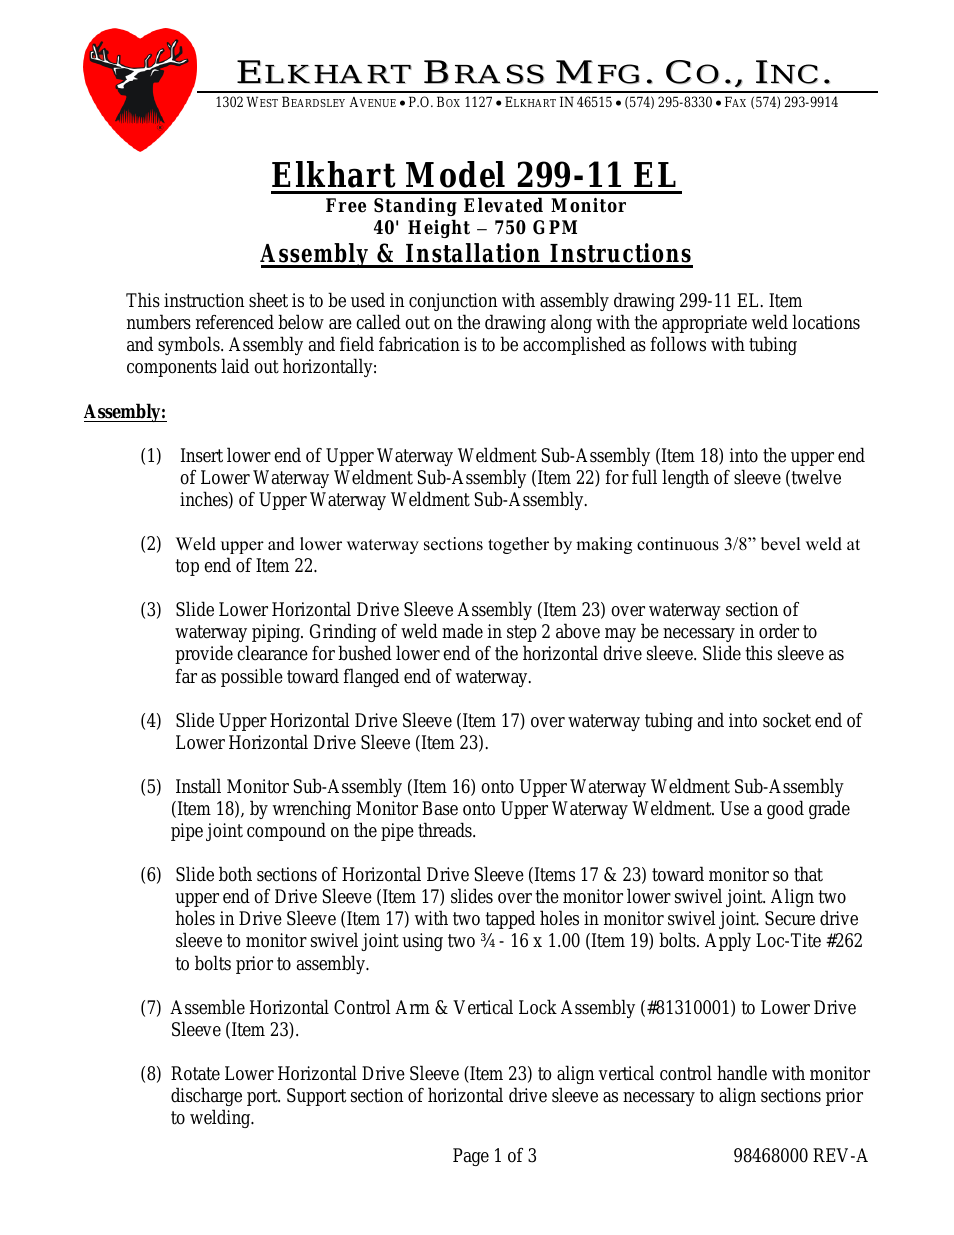 ELKHART 299-11 EL (40-Ft 750-GPM)